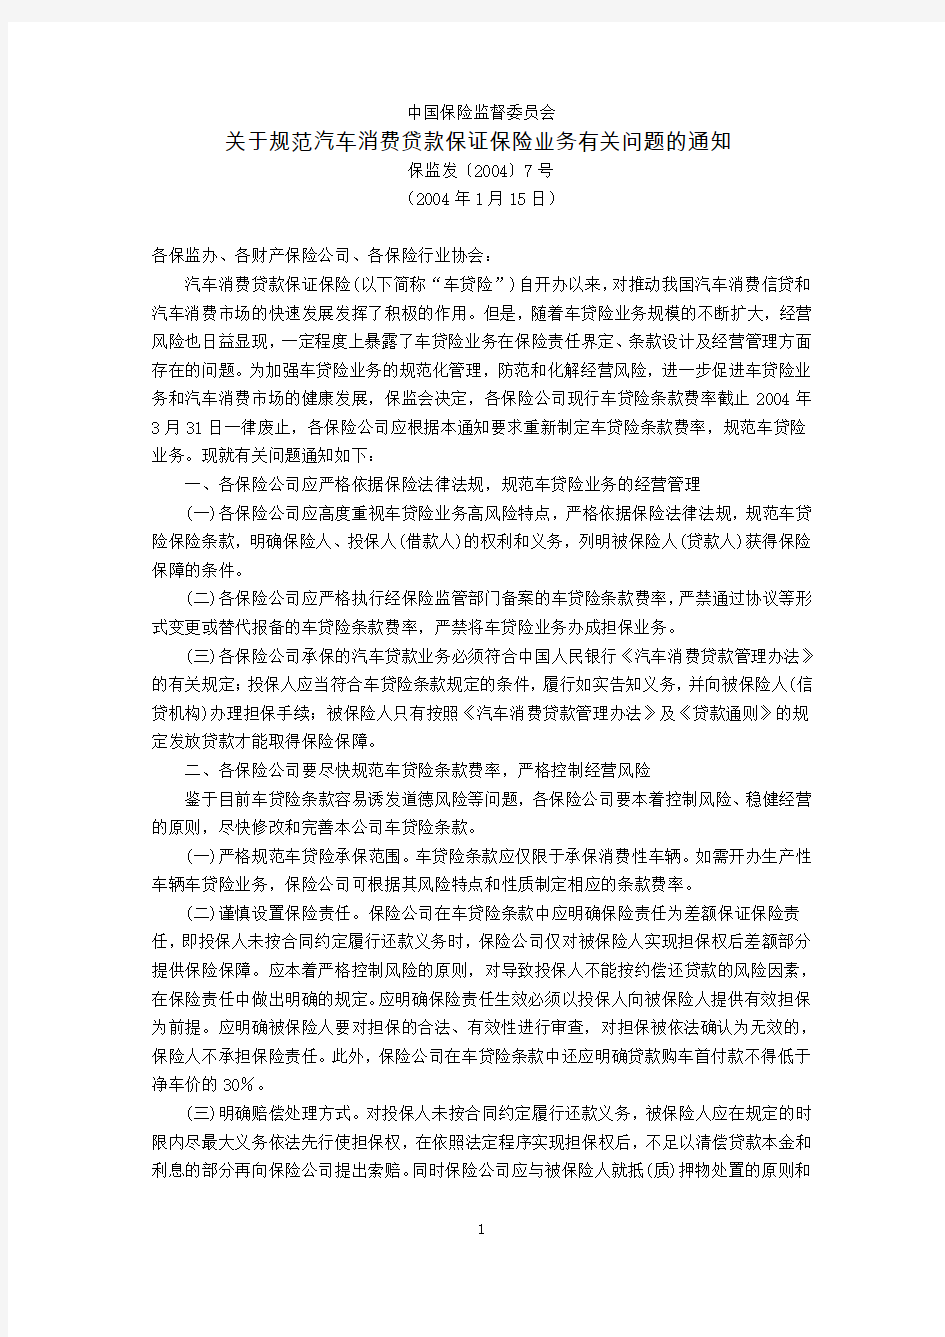 中国保险监督委员会关于规范汽车消费贷款保证保险业务有关问题的通知(保监发〔2004〕7号,2004年1月15日)